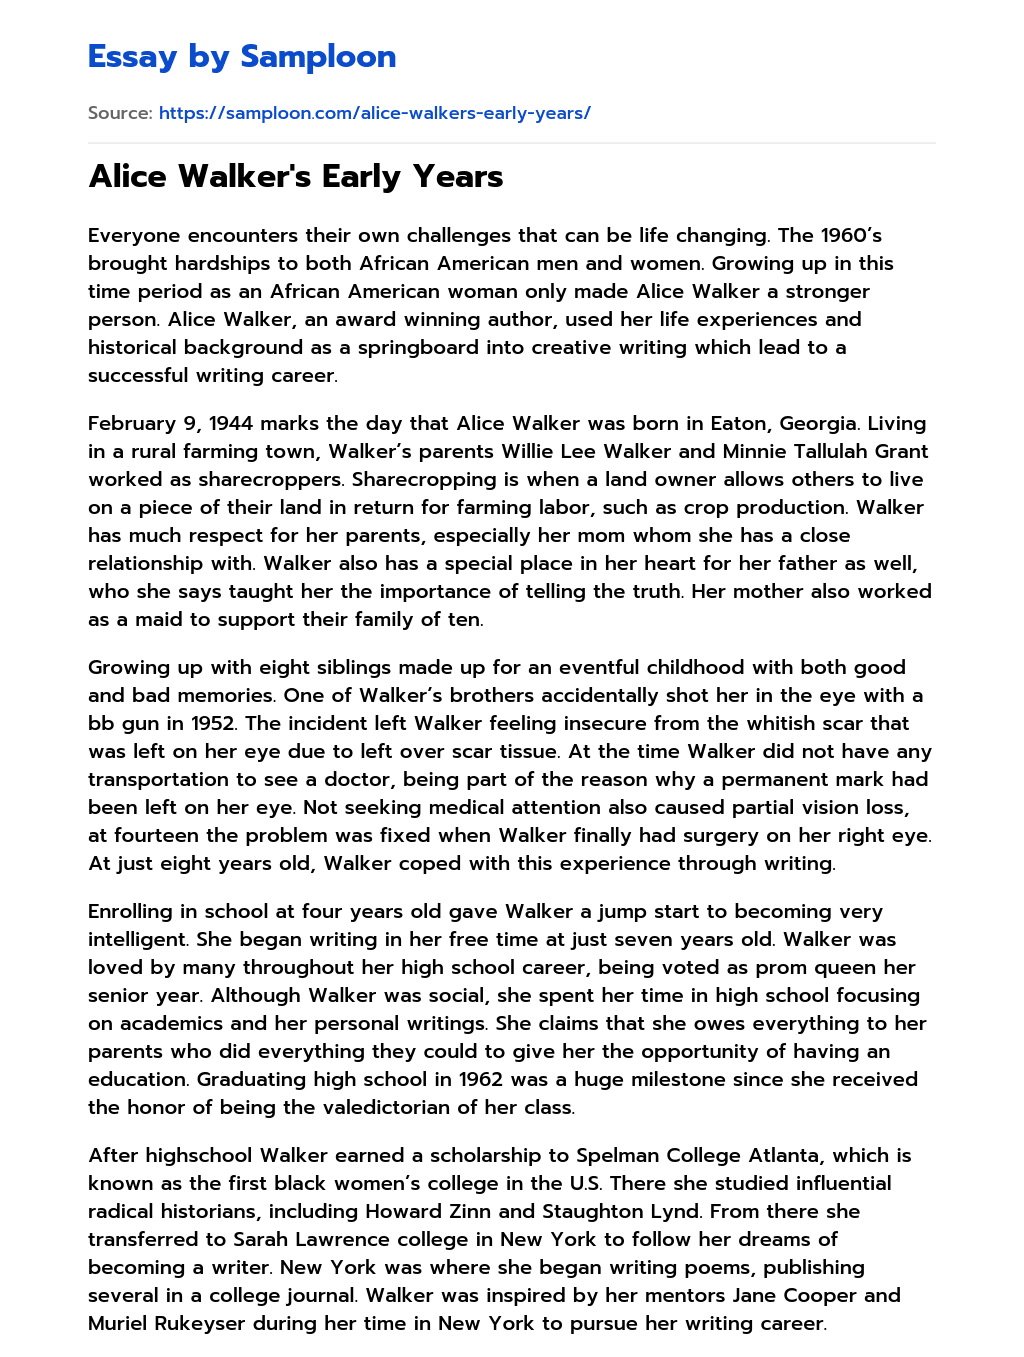 Alice Walker’s Early Years essay